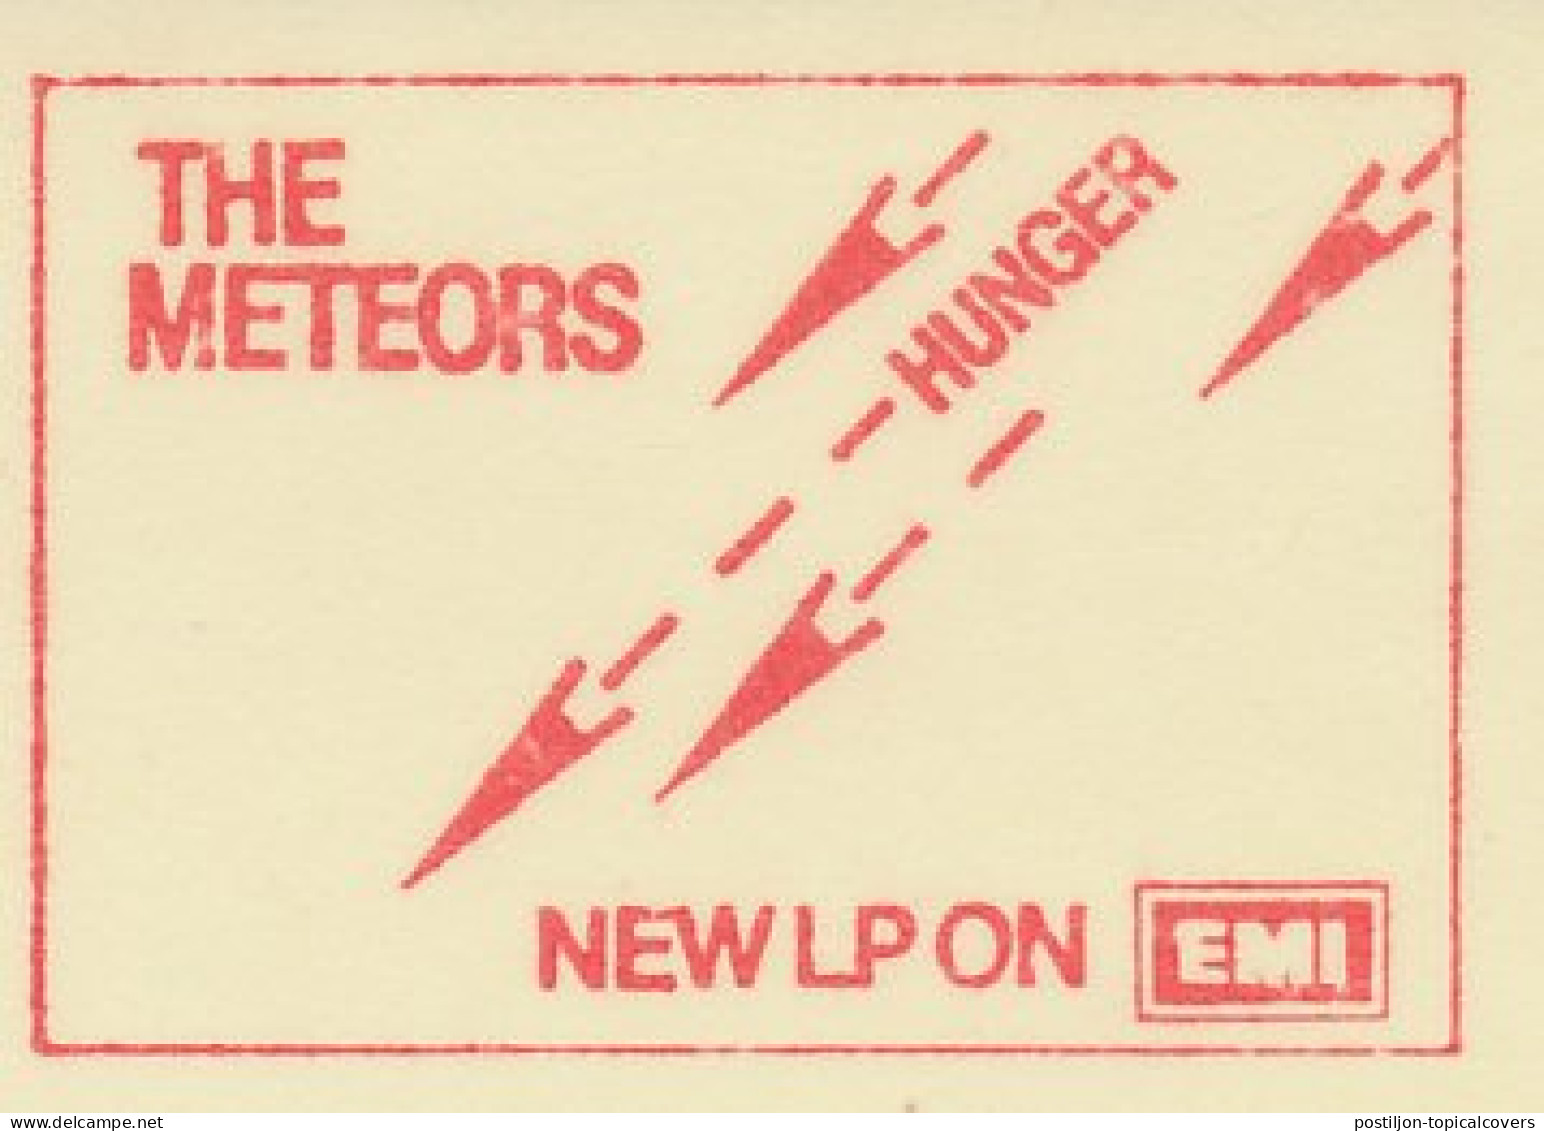 Meter Cut Netherlands 1980 The Meteors - Dutch Rockband - New LP Hunger - Musica